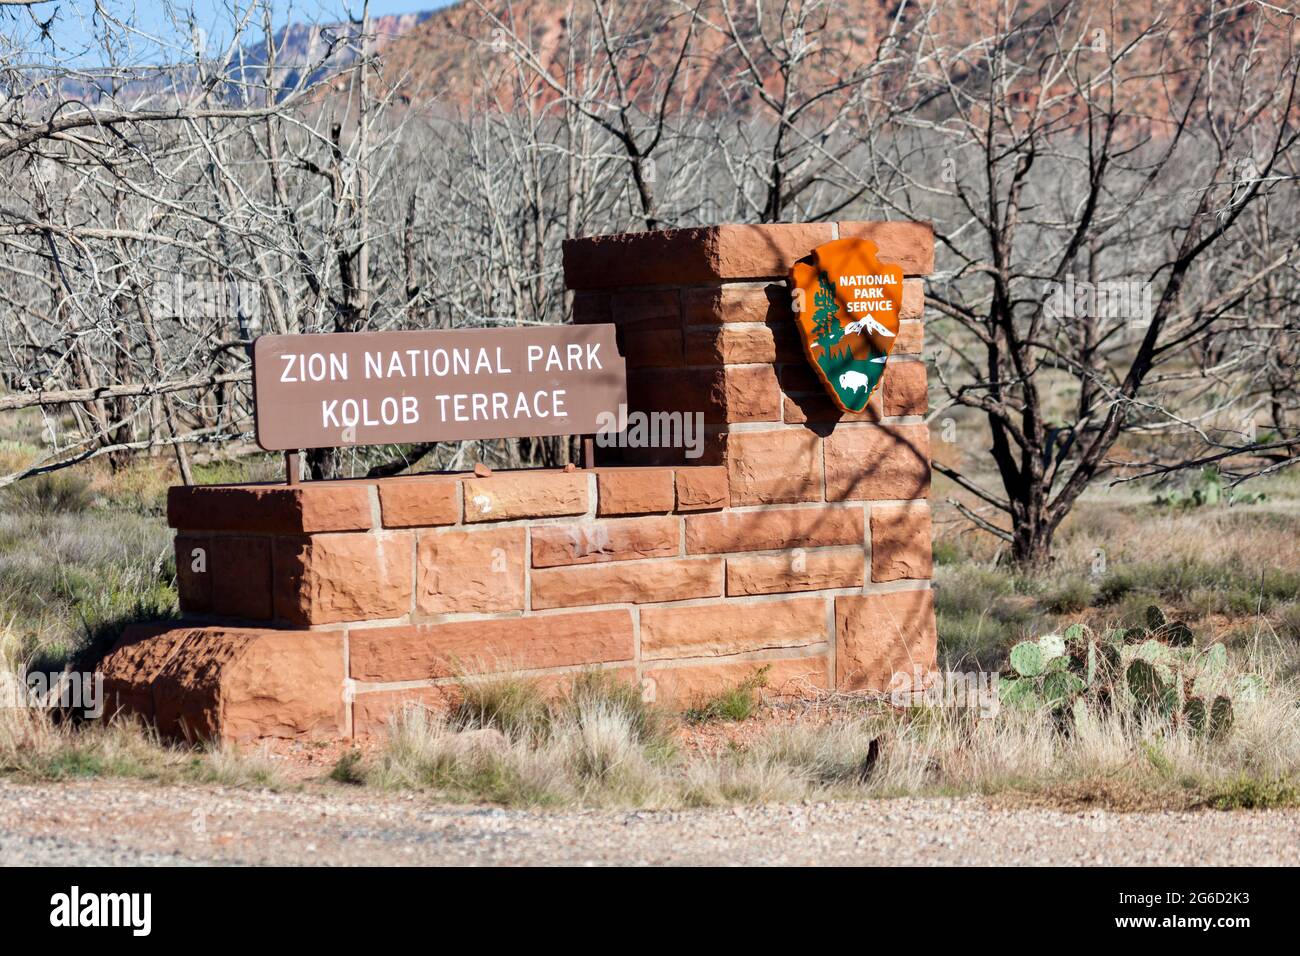 Zion National Park, Utah / USA - 4. November 2014: Ein rotes Felsschild für die Kolob Terrace Eingang zum Zion National Park mit herzerfalllicher Wüstenlandschaft i Stockfoto